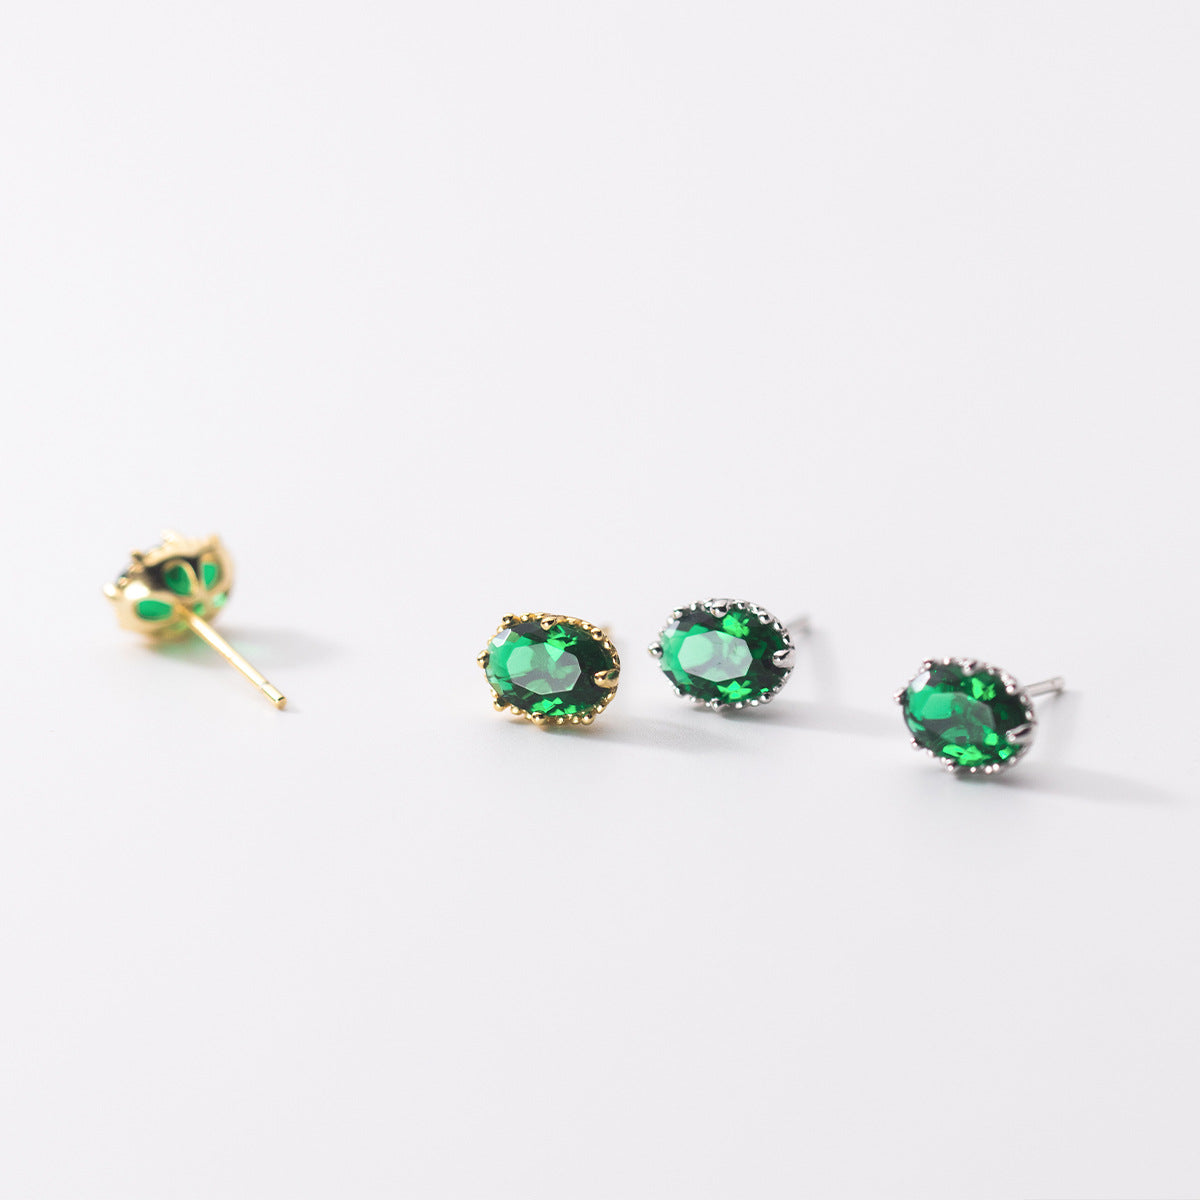 S925 Silver Green Diamond Oval Tori Stud Earrings